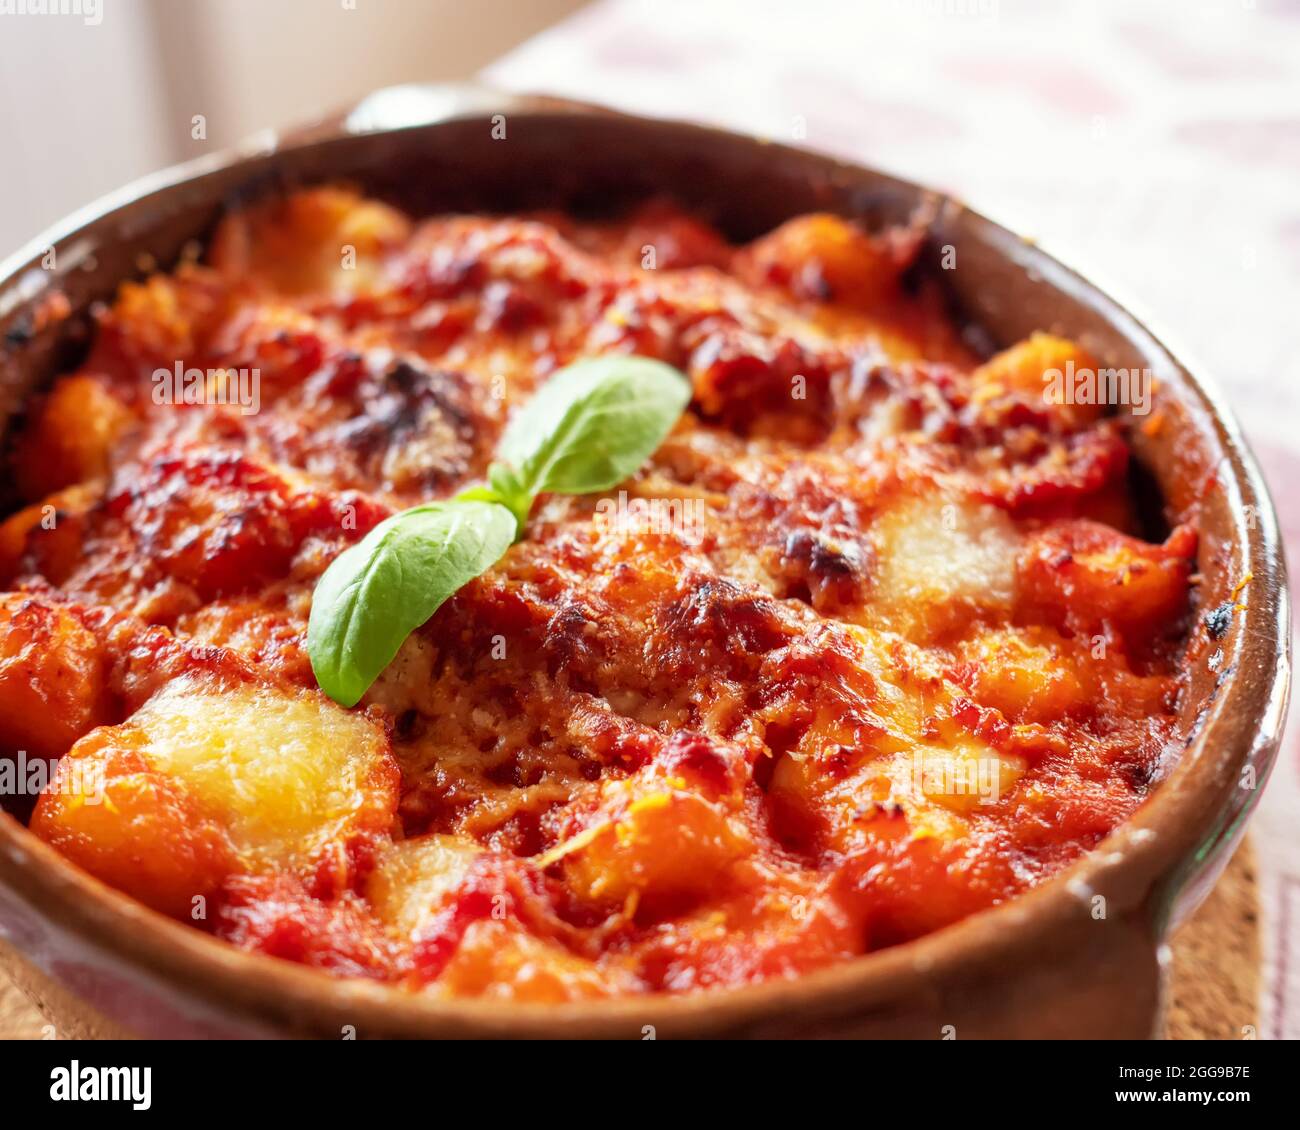 Gnocchi alla Sorrentina, boulettes de pommes de terre italiennes à la sauce tomate, gratinées avec du fromage mozzarella dans un plat en terre cuite. Mise au point sélective. Banque D'Images